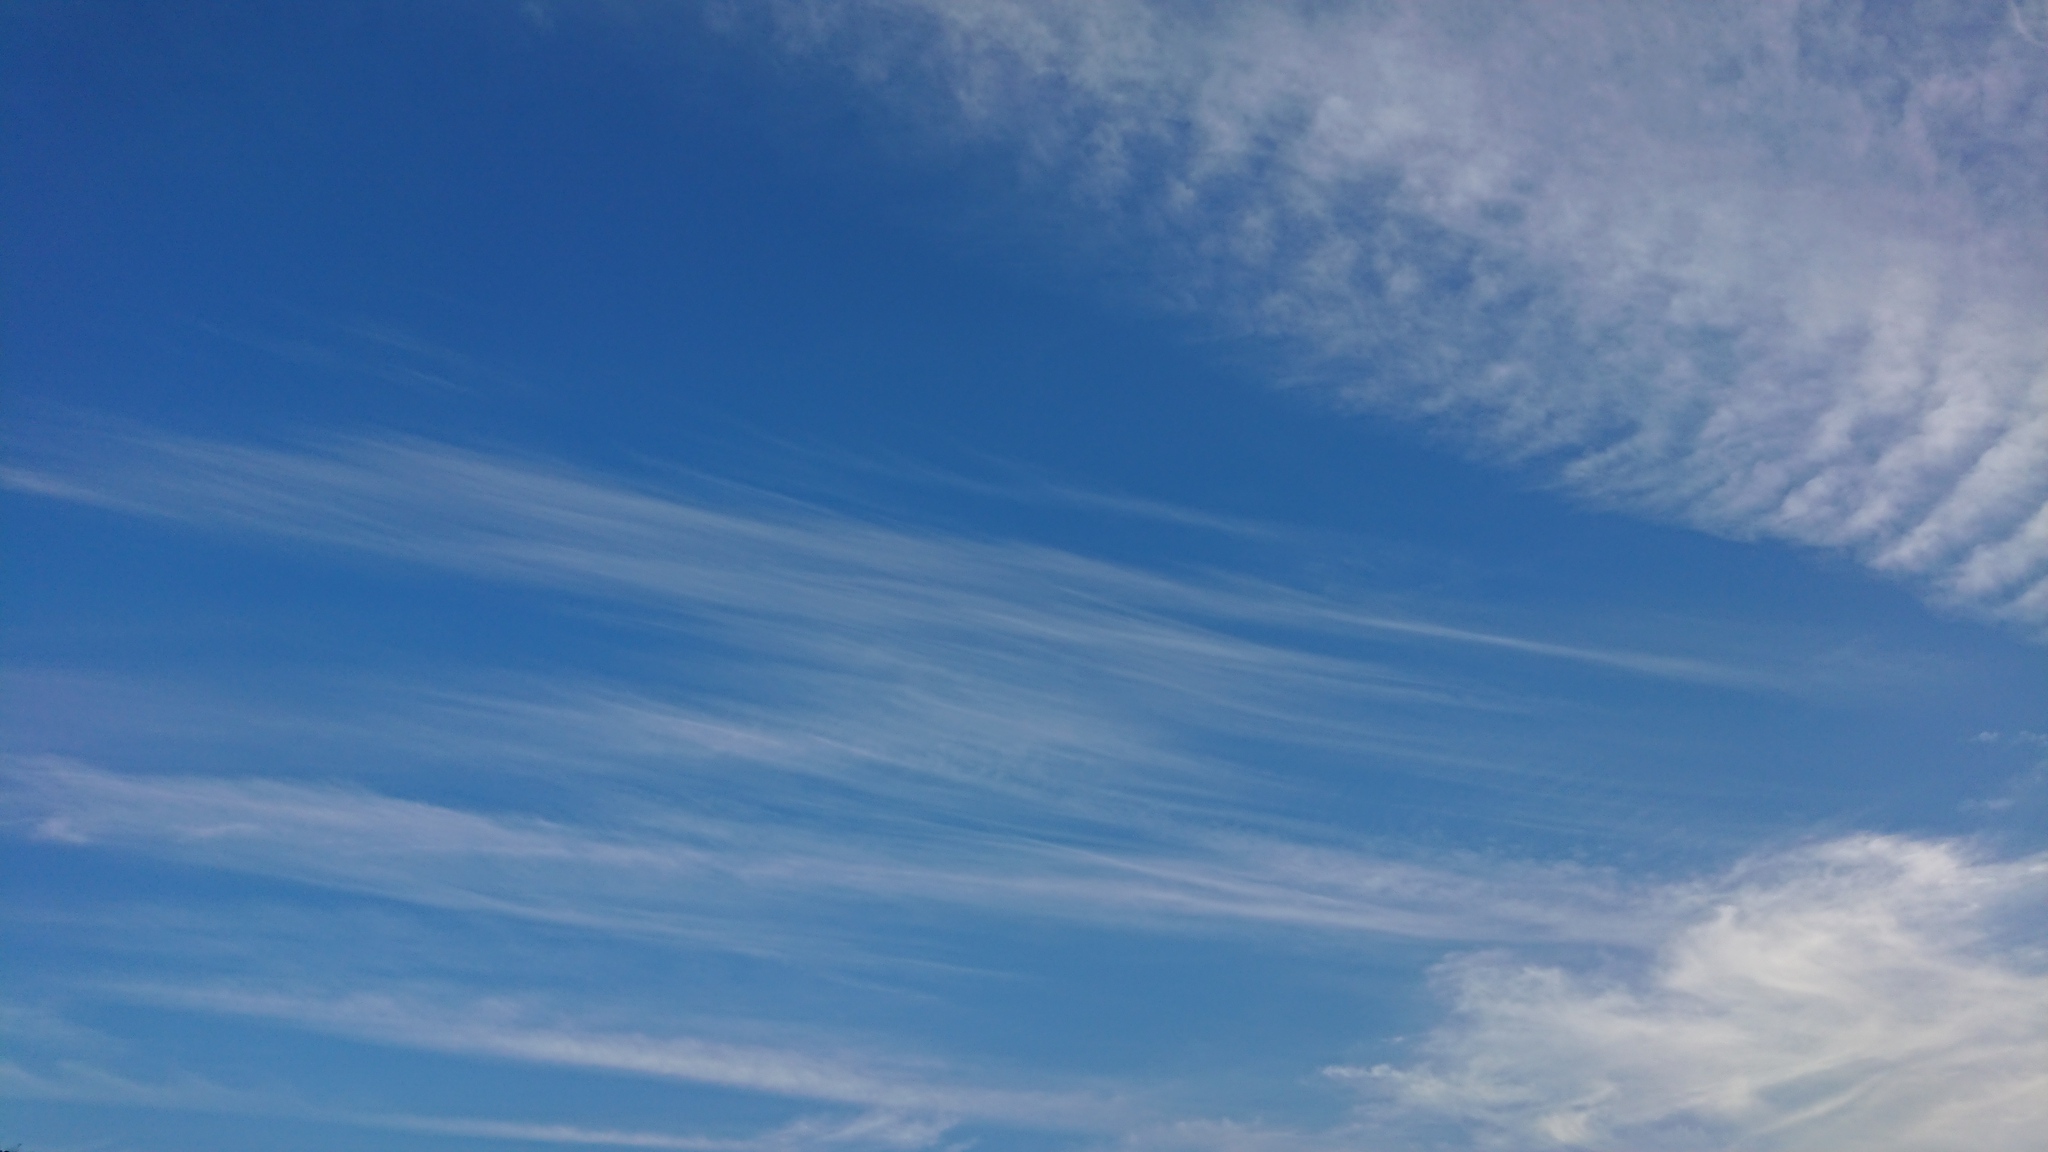 Bar クロス ｘ ポイント 雲は横に流れるのが普通 が 縦もアリみたい ノ